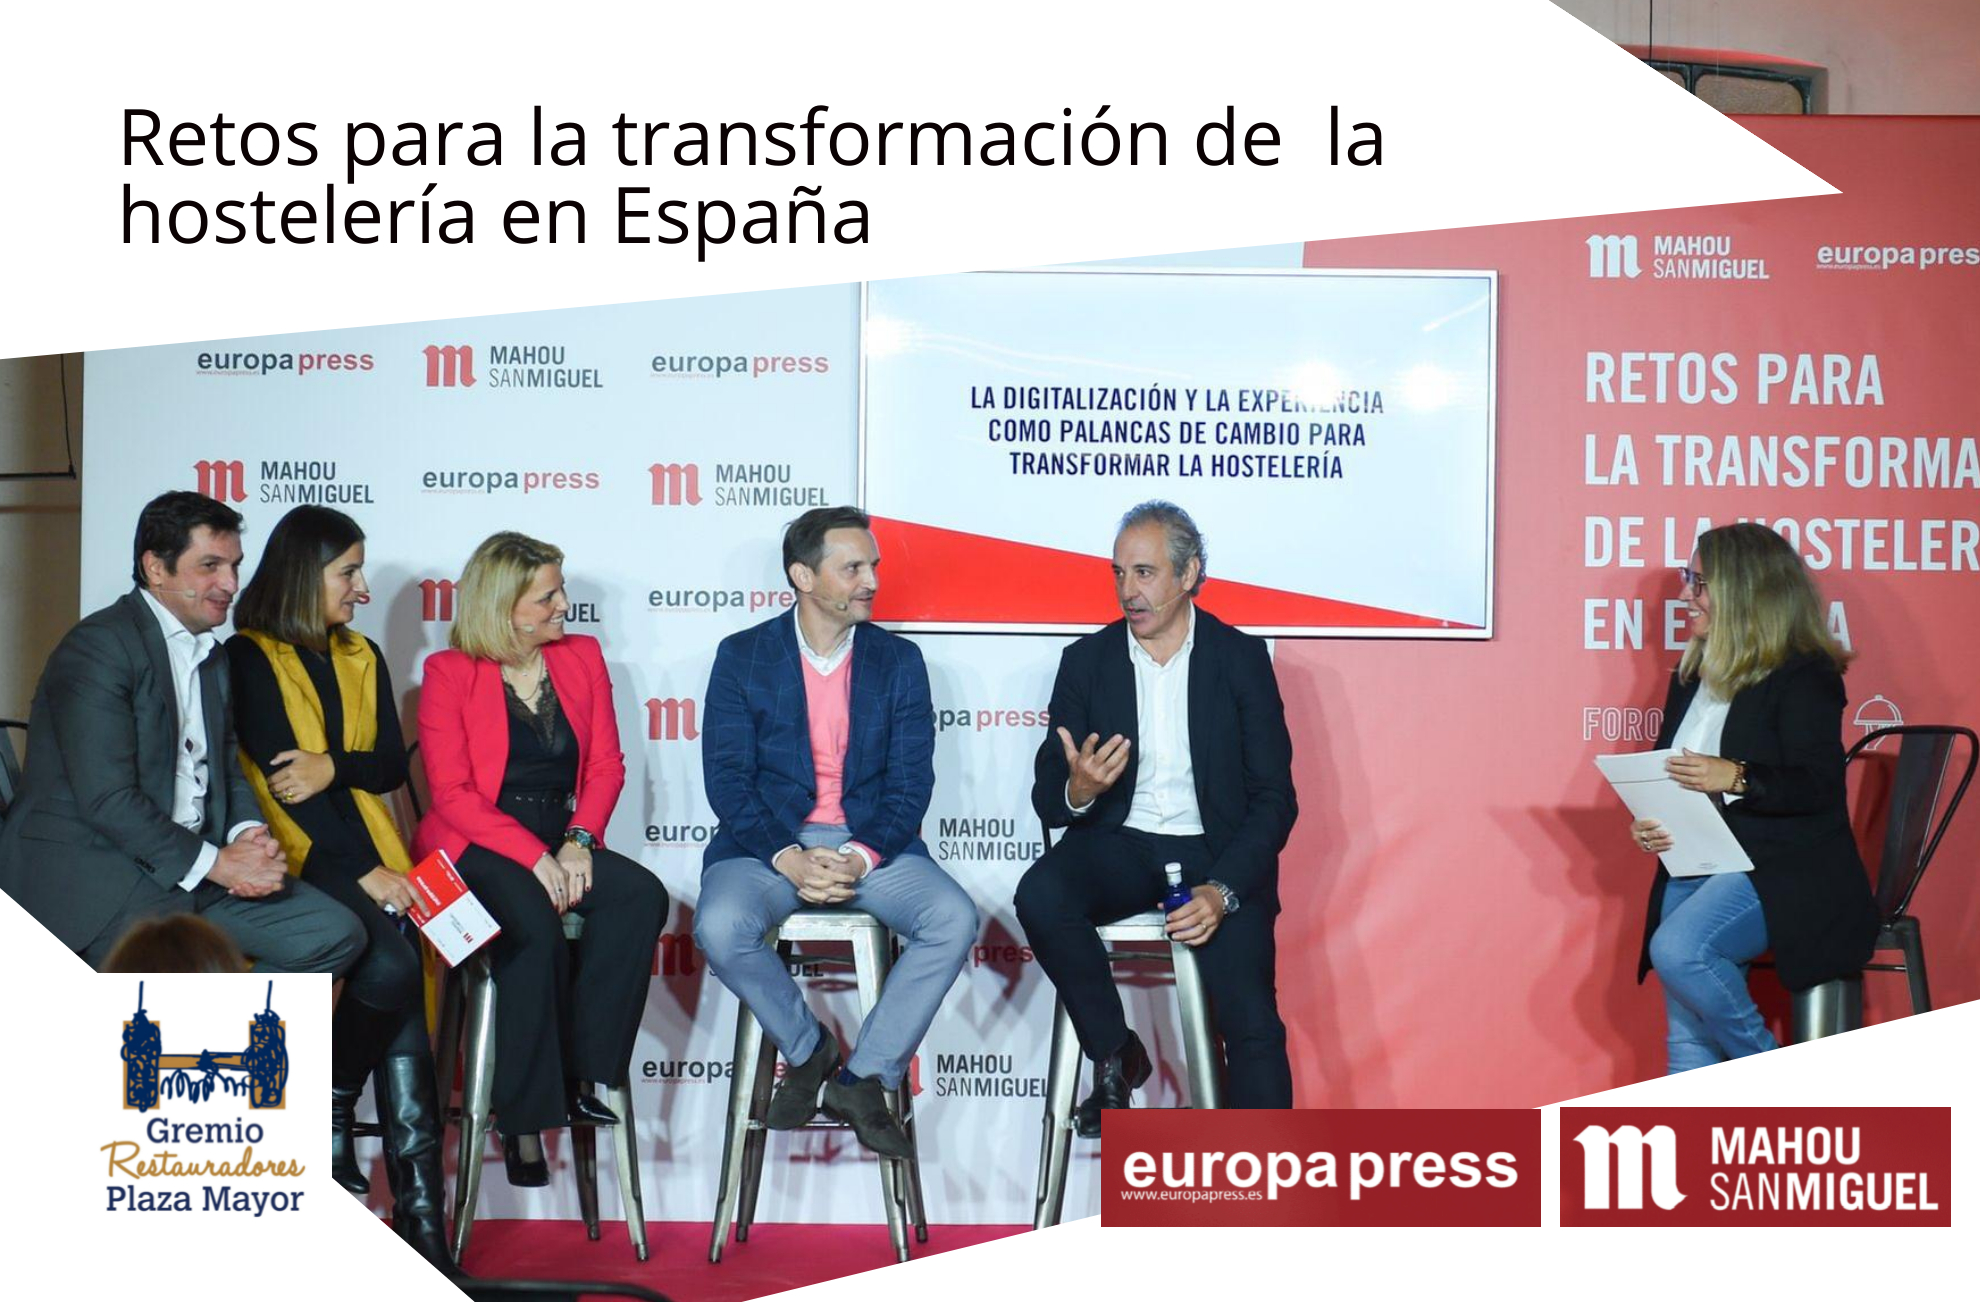 Retos para la transformación de la hostelería en España